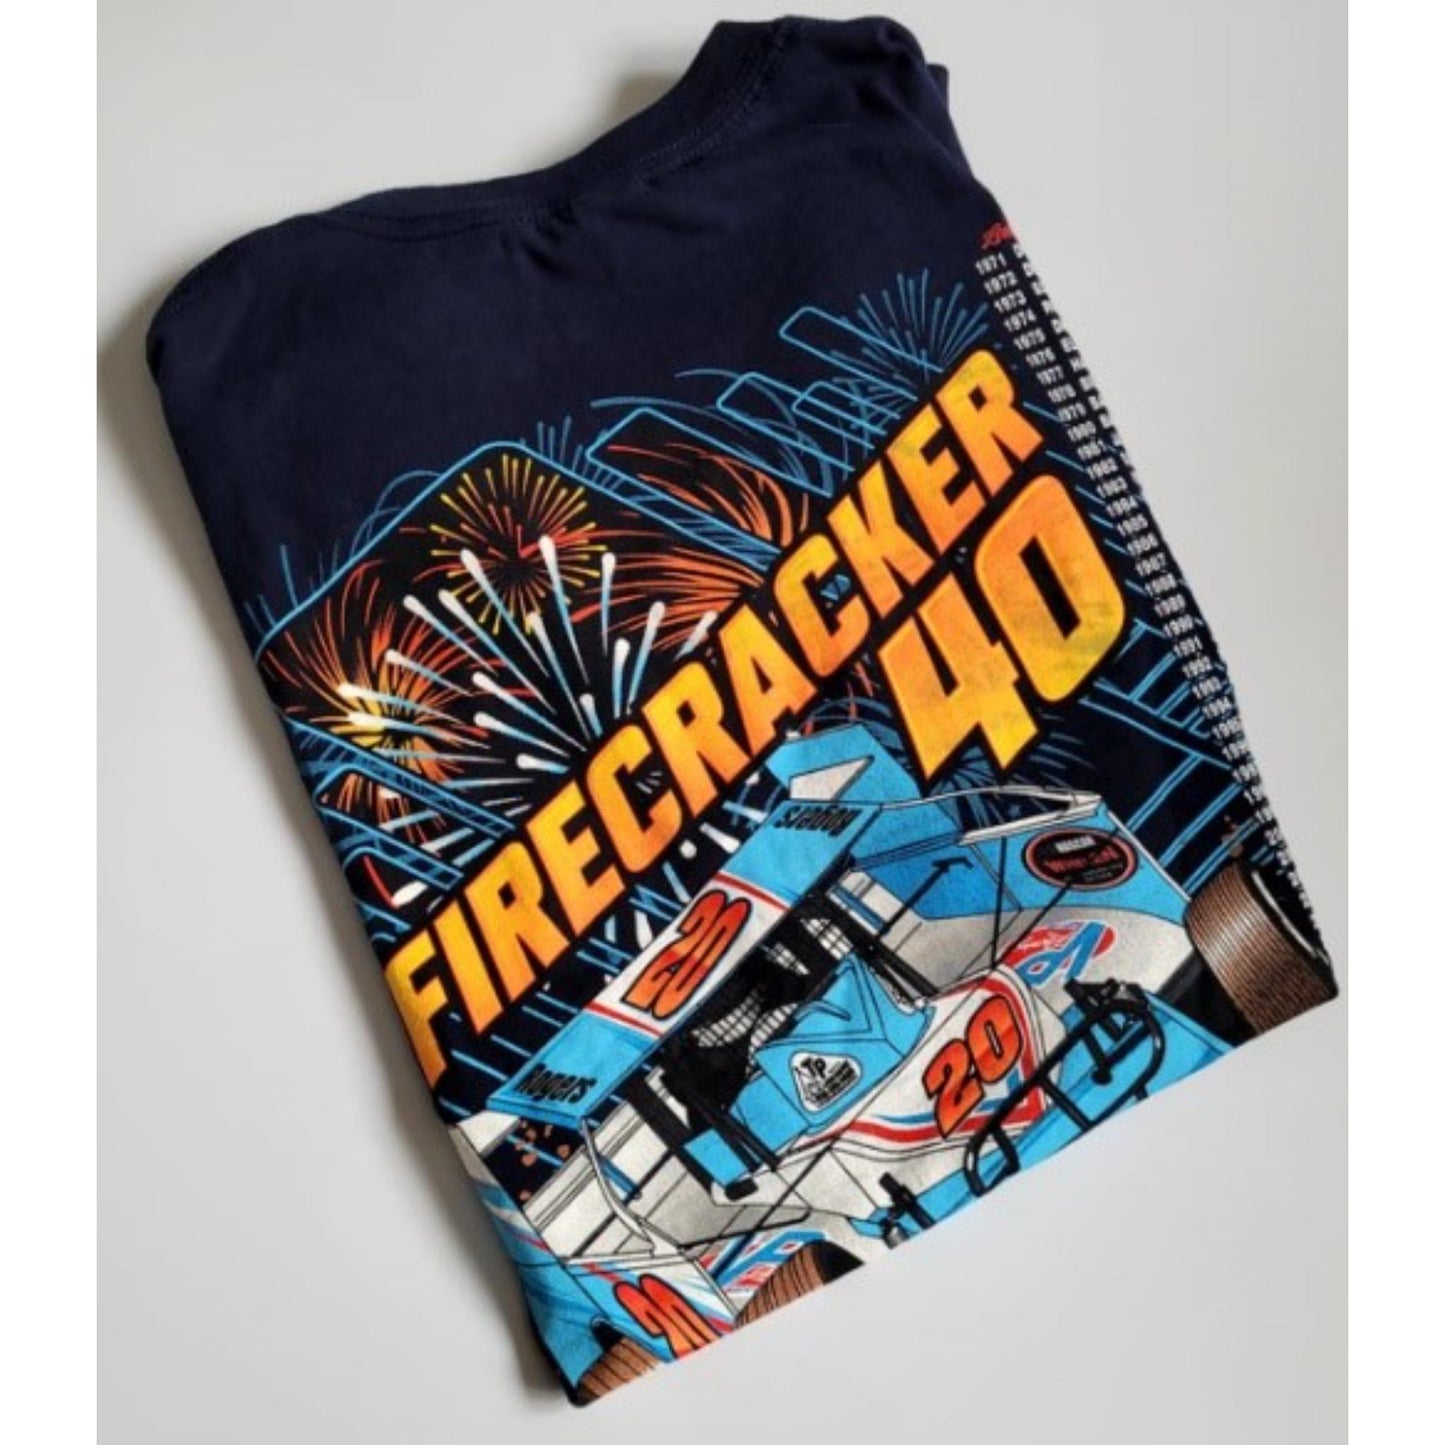 Vintage 'Firecracker' T-Shirt